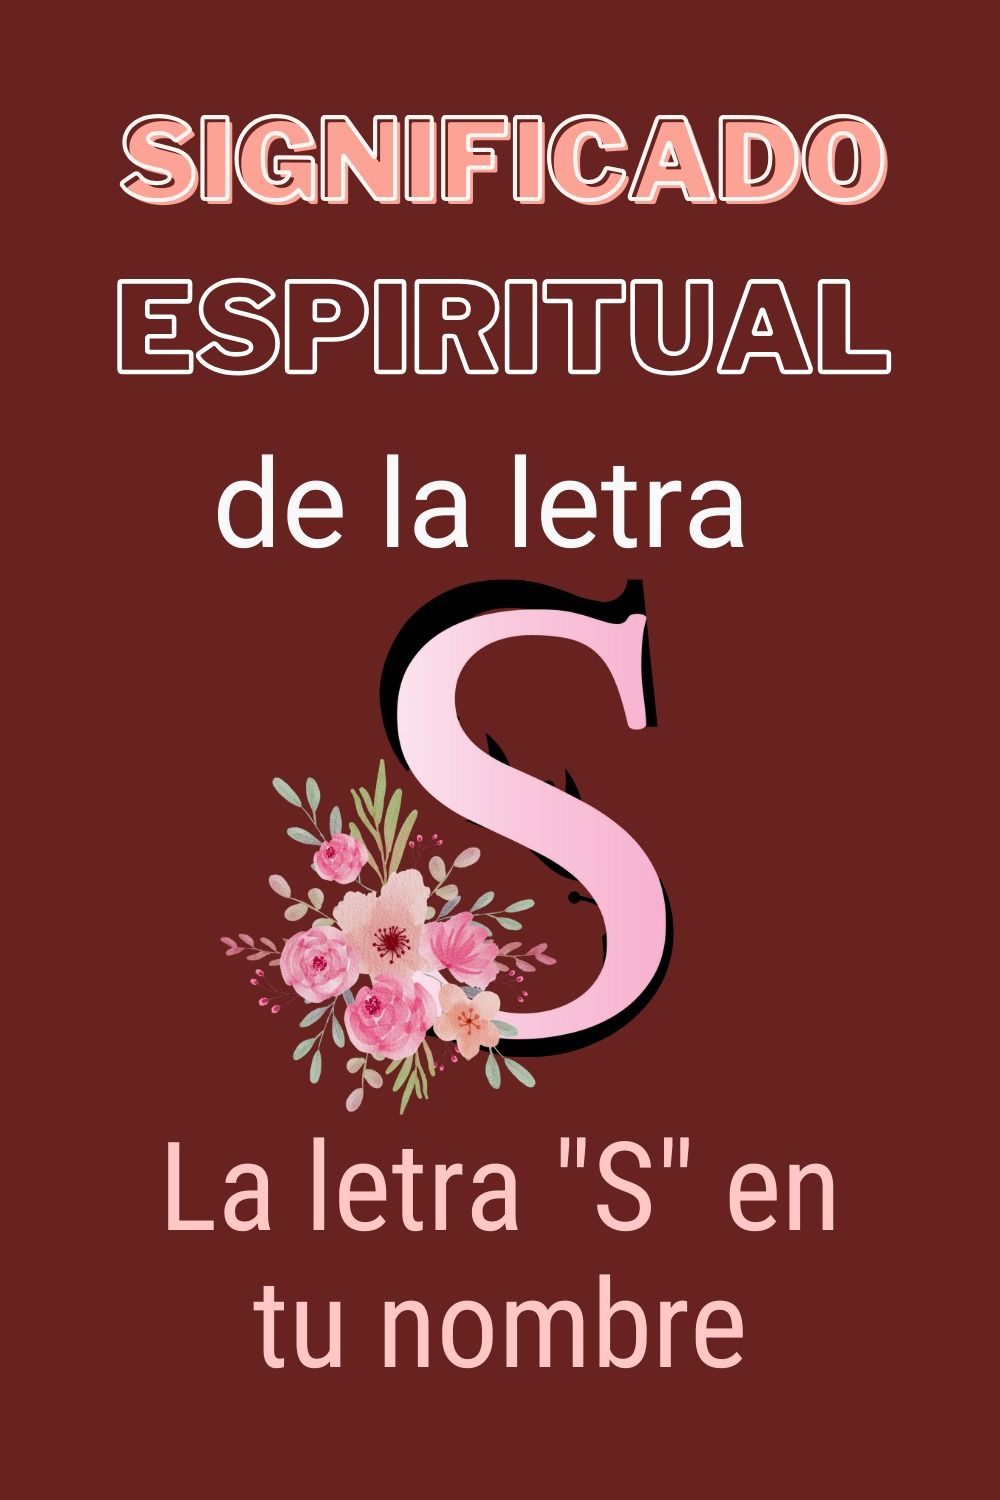 El misterioso significado espiritual de la letra S